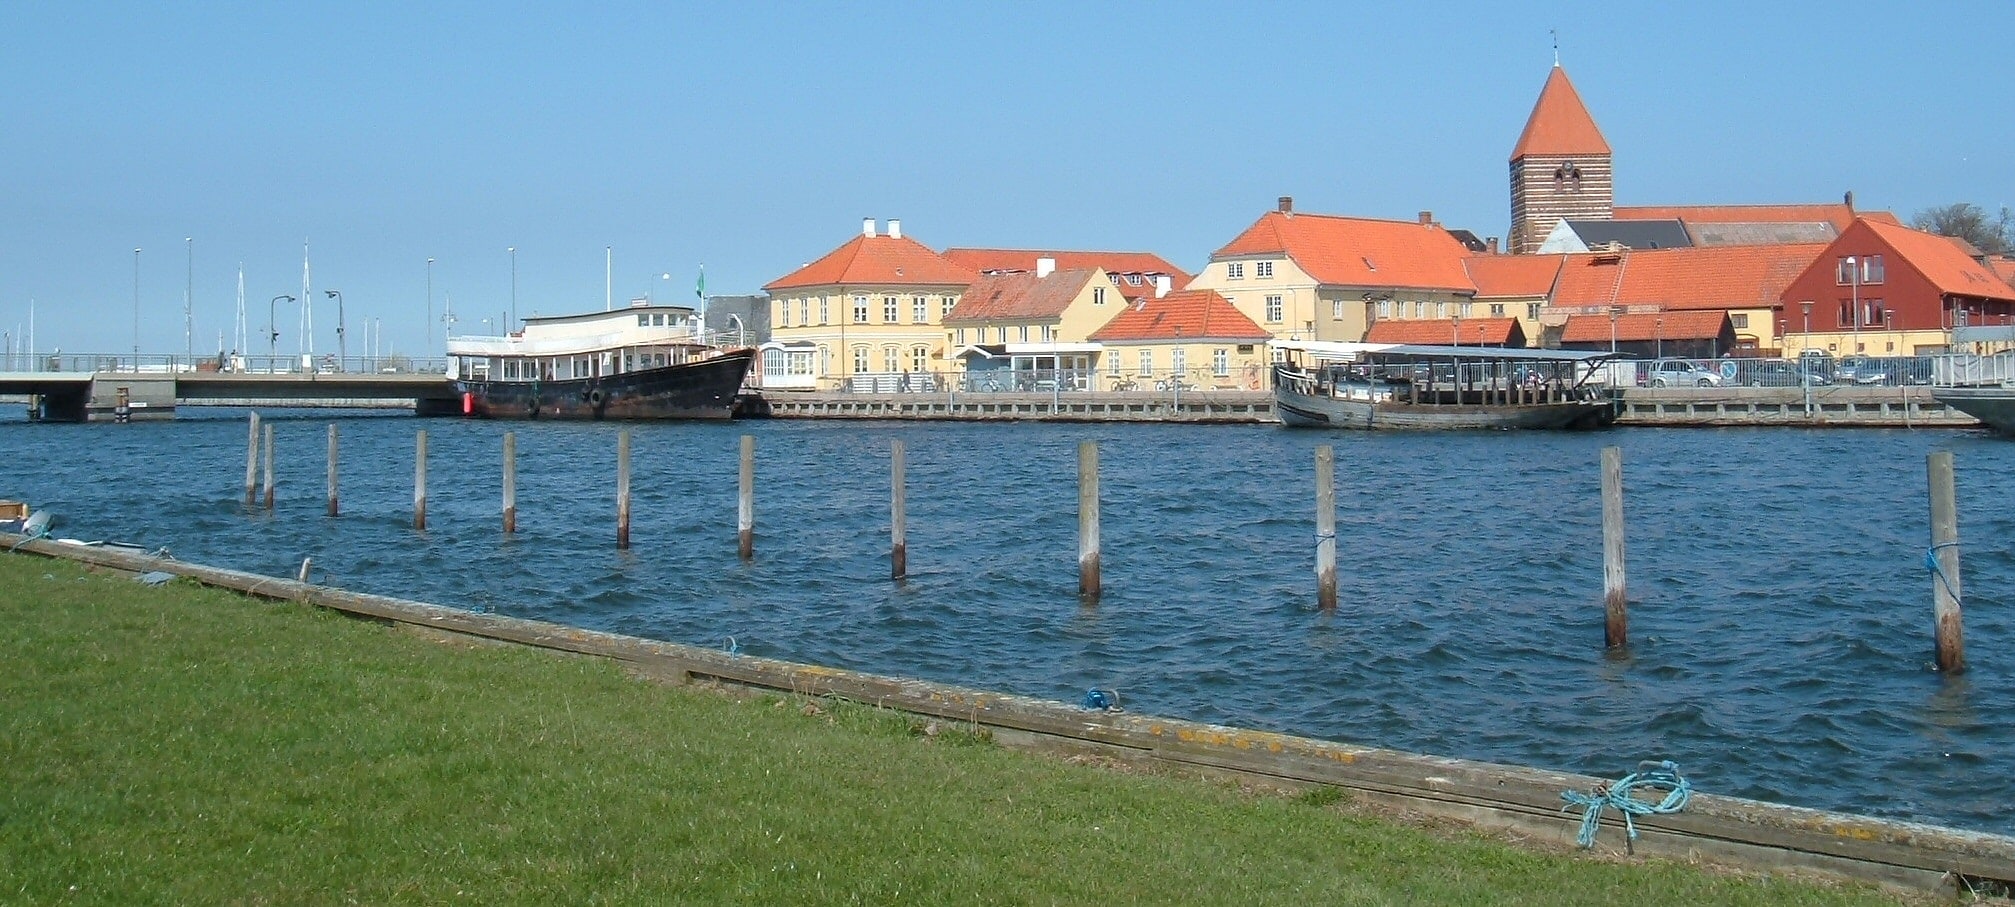 Stege, Denmark